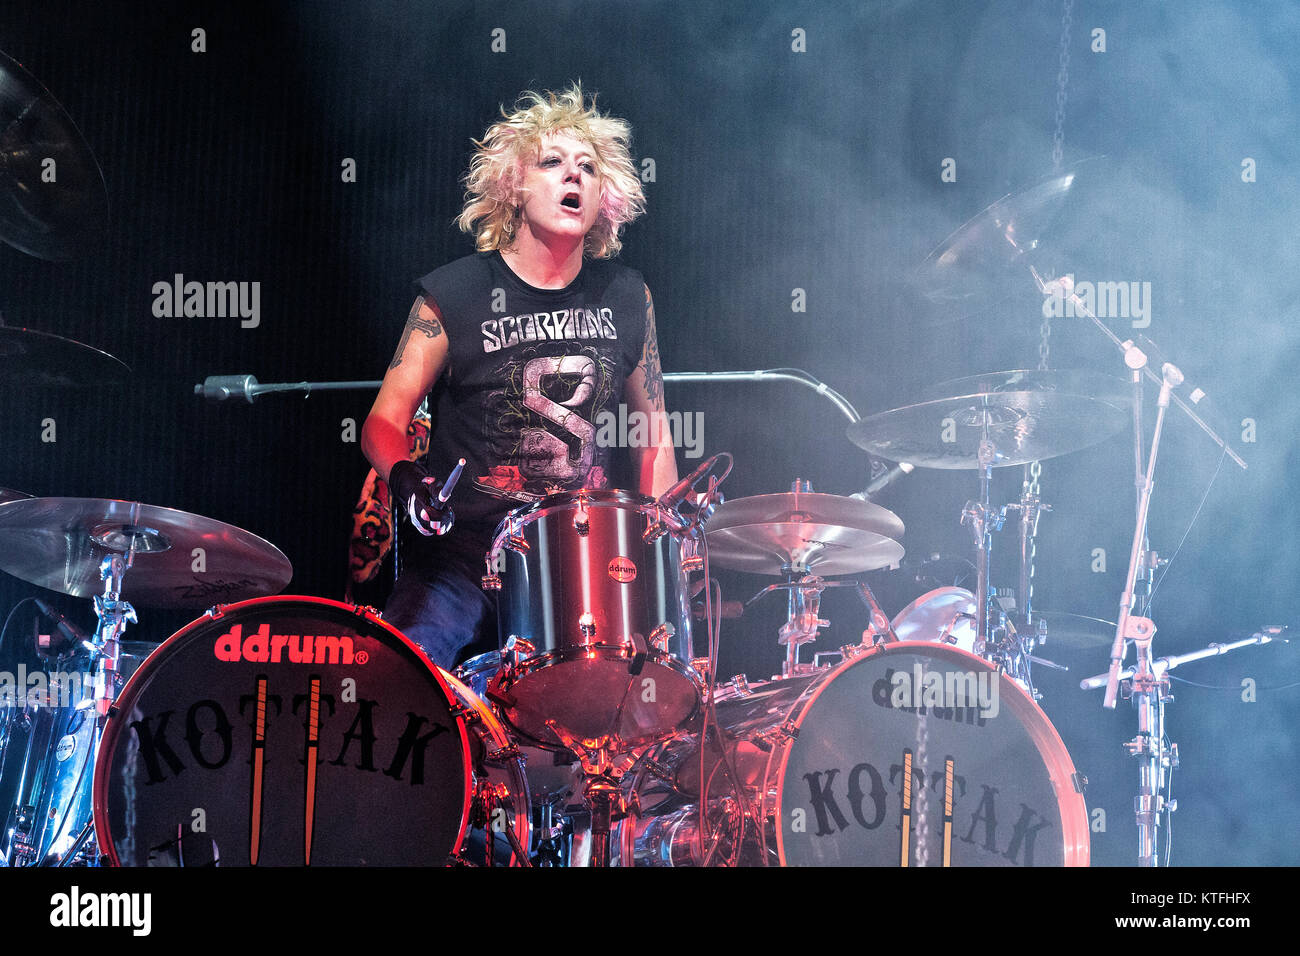 Die deutsche Rockband Scorpions führt ein Live Konzert in der Telenor Arena  in Oslo. Hier Musiker James Kottak am Schlagzeug ist live auf der Bühne  gesehen. Norwegen, 10.12.2012 Stockfotografie - Alamy